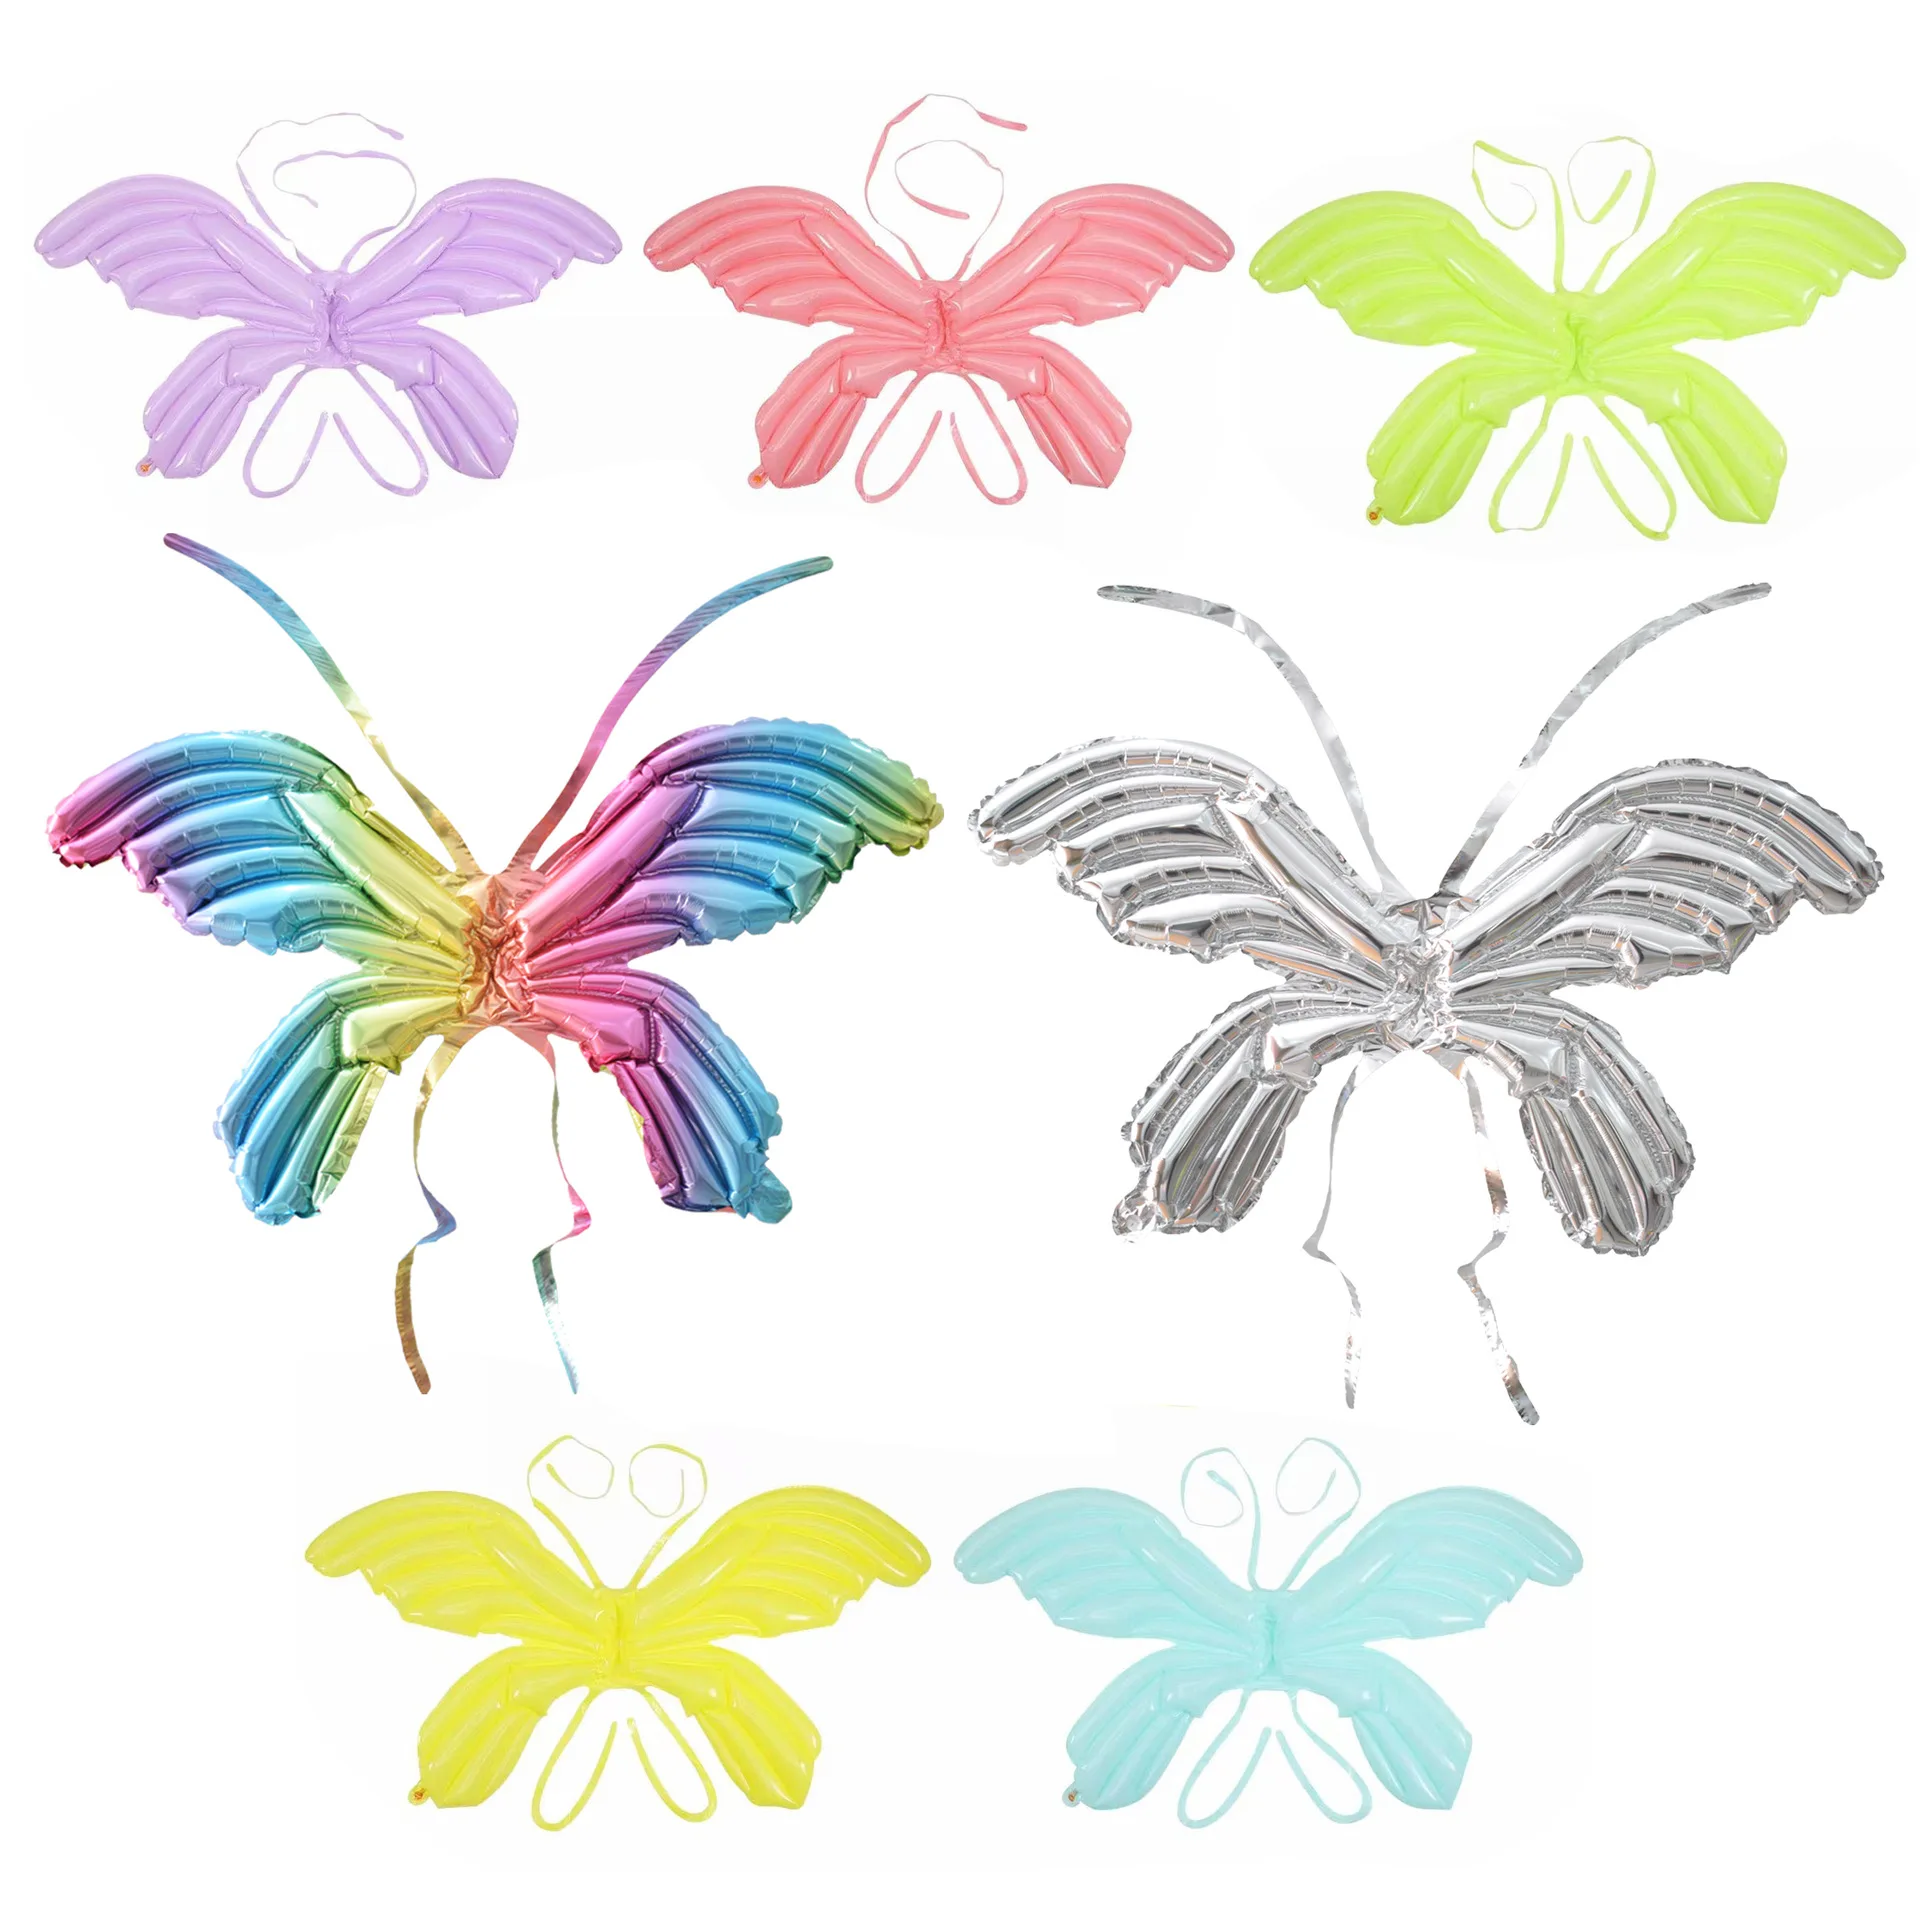 

Красочные воздушные шары с крыльями бабочки, задние подвесные фольгированные воздушные шары, ангел, детская игрушка на день детей, технические принадлежности